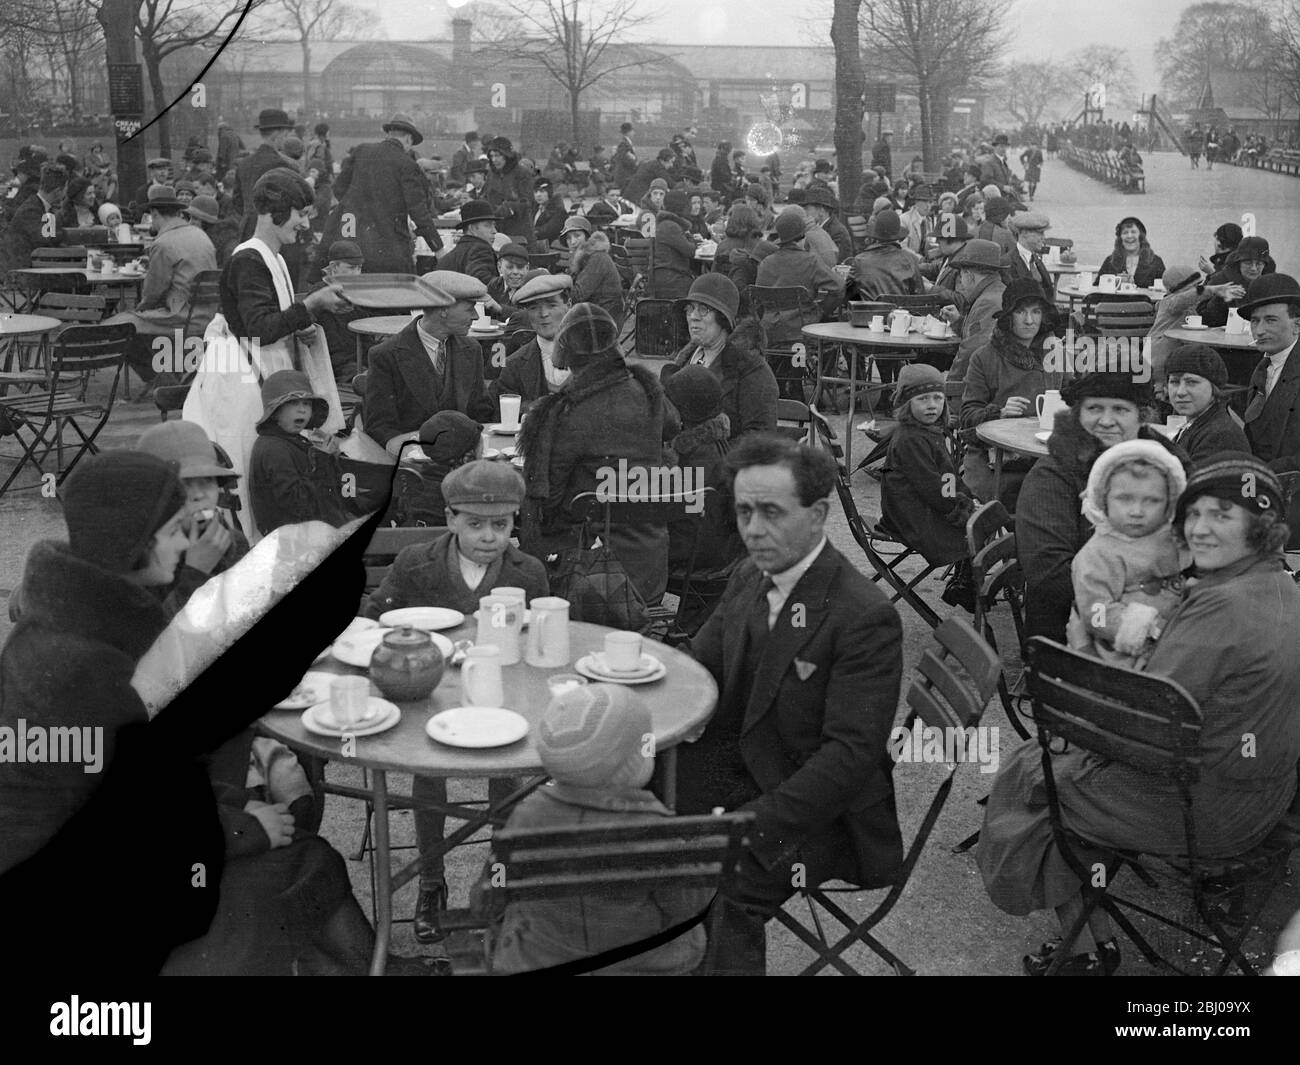 Urlaub im Zoo. - riesige Menschenmengen drängten am Ostermontag in den Londoner Zoo. - Menschenmassen genießen Mittagessen im Zoo während ihrer Bank Holiday Besuch. - 28. März 1932 Stockfoto